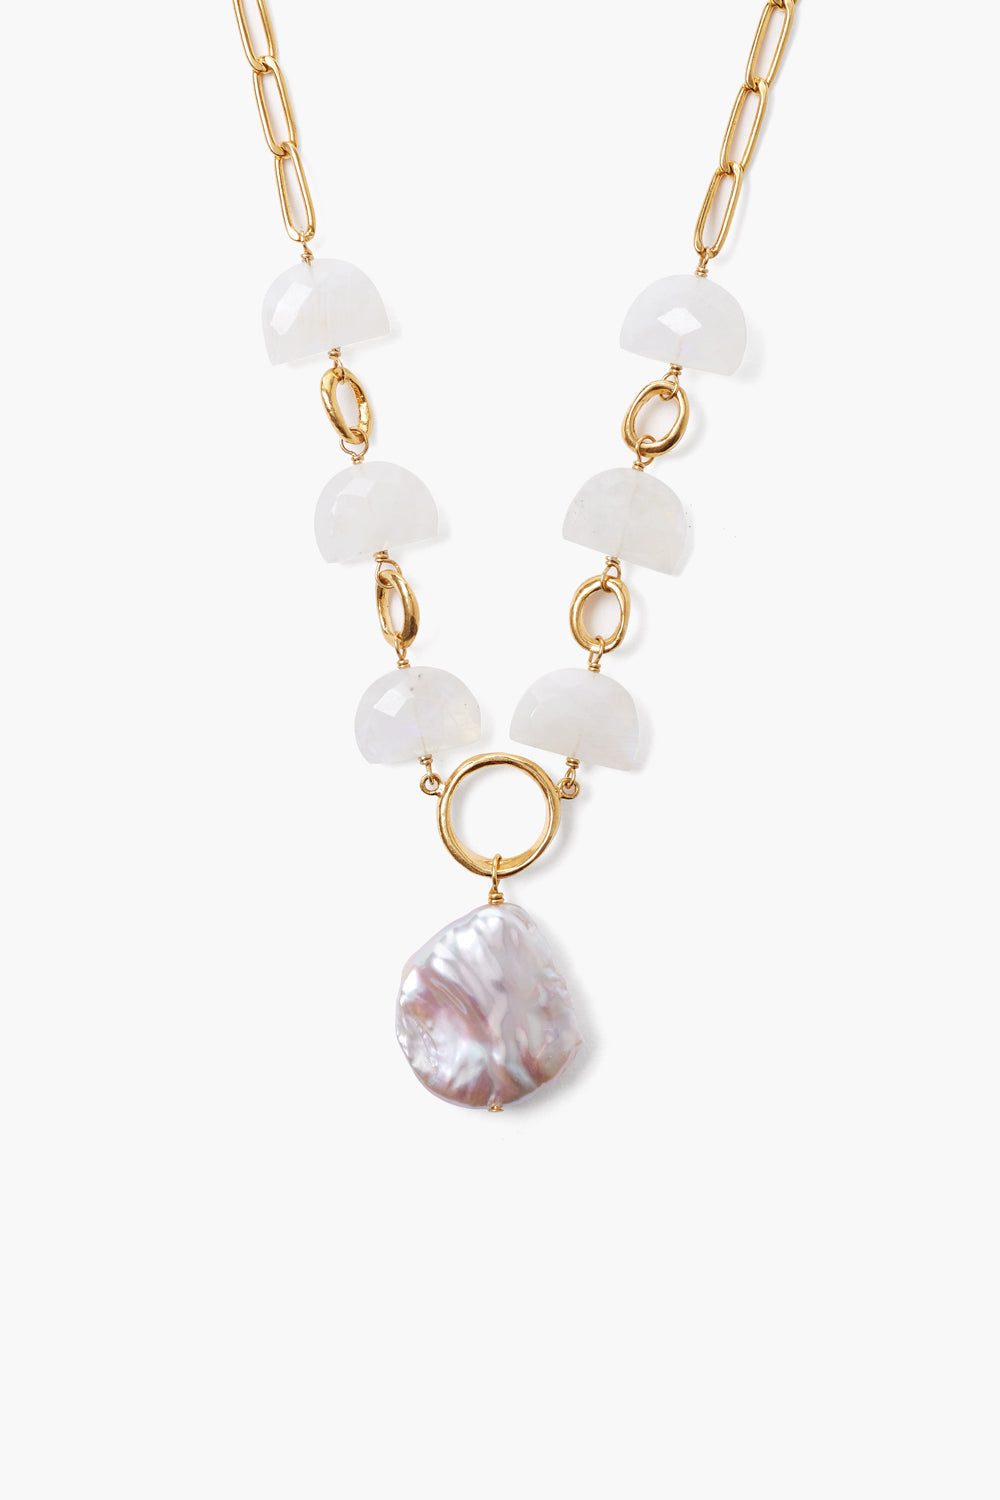 Moonstone Pearl Luna Necklace